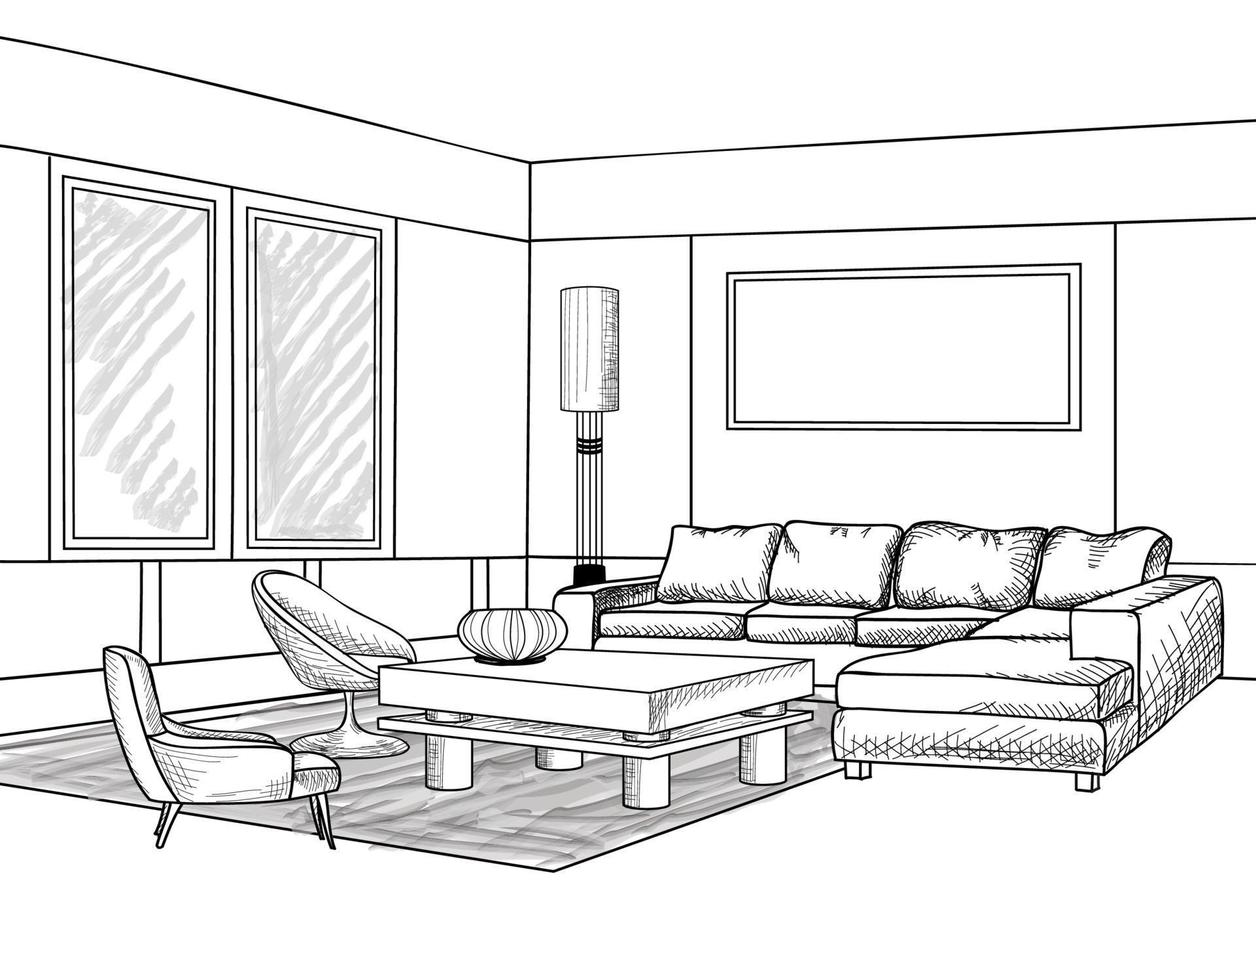 intérieur du salon de la maison. croquis de contour de meubles avec canapé, étagères, table. conception de dessin de salon. gravure illustration de dessin à la main vecteur